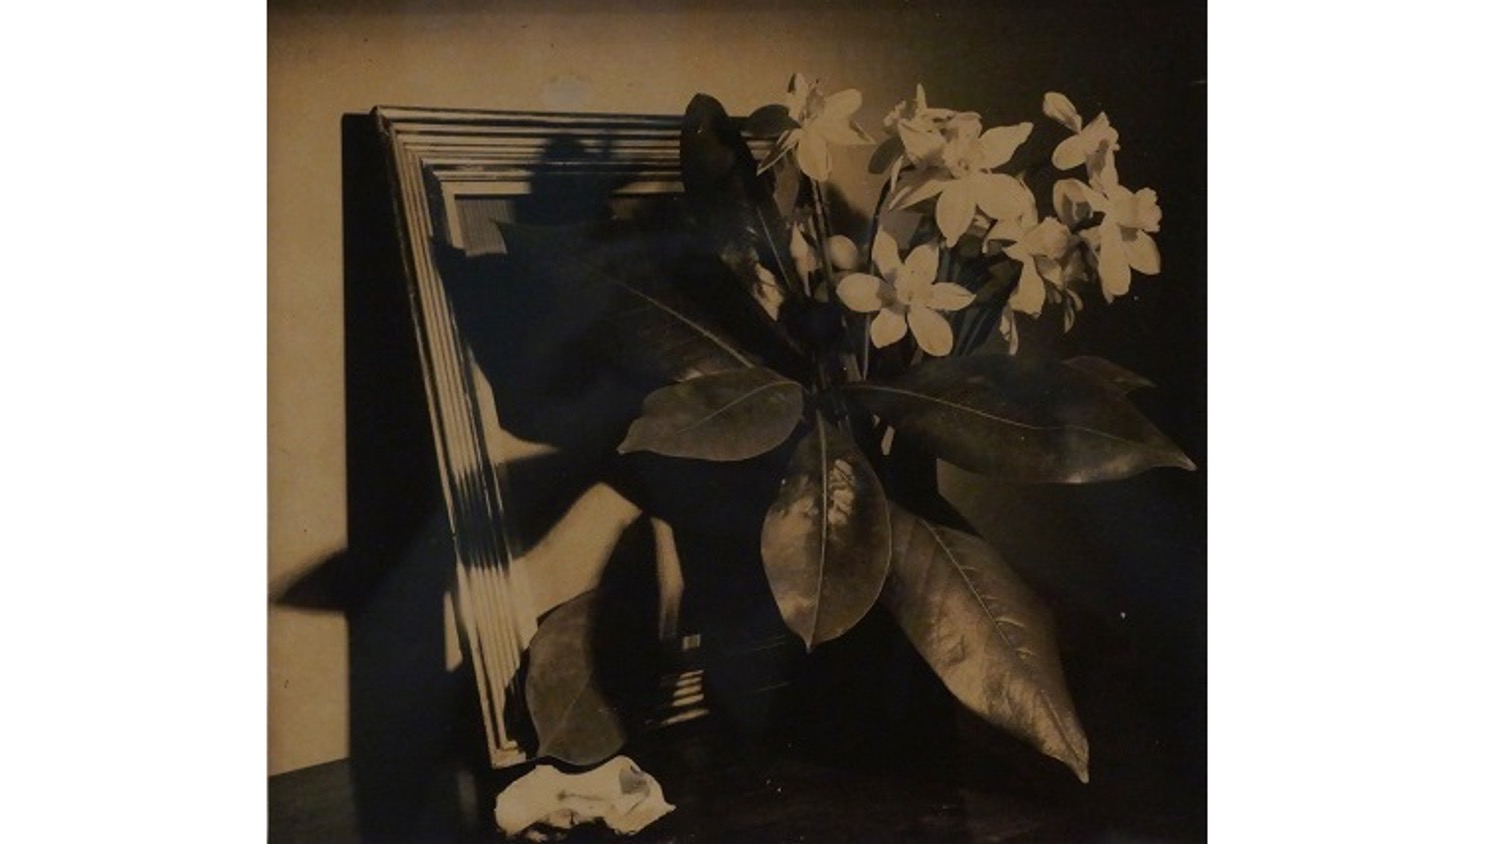 Horacio Coppola. Fotógrafo y cineasta argentino 1906-2012, perteneciente a la Bauhaus.  "Flores- Ramos Mejía", 1940. Fotografía vintage. 23,5 x 25,5 cm